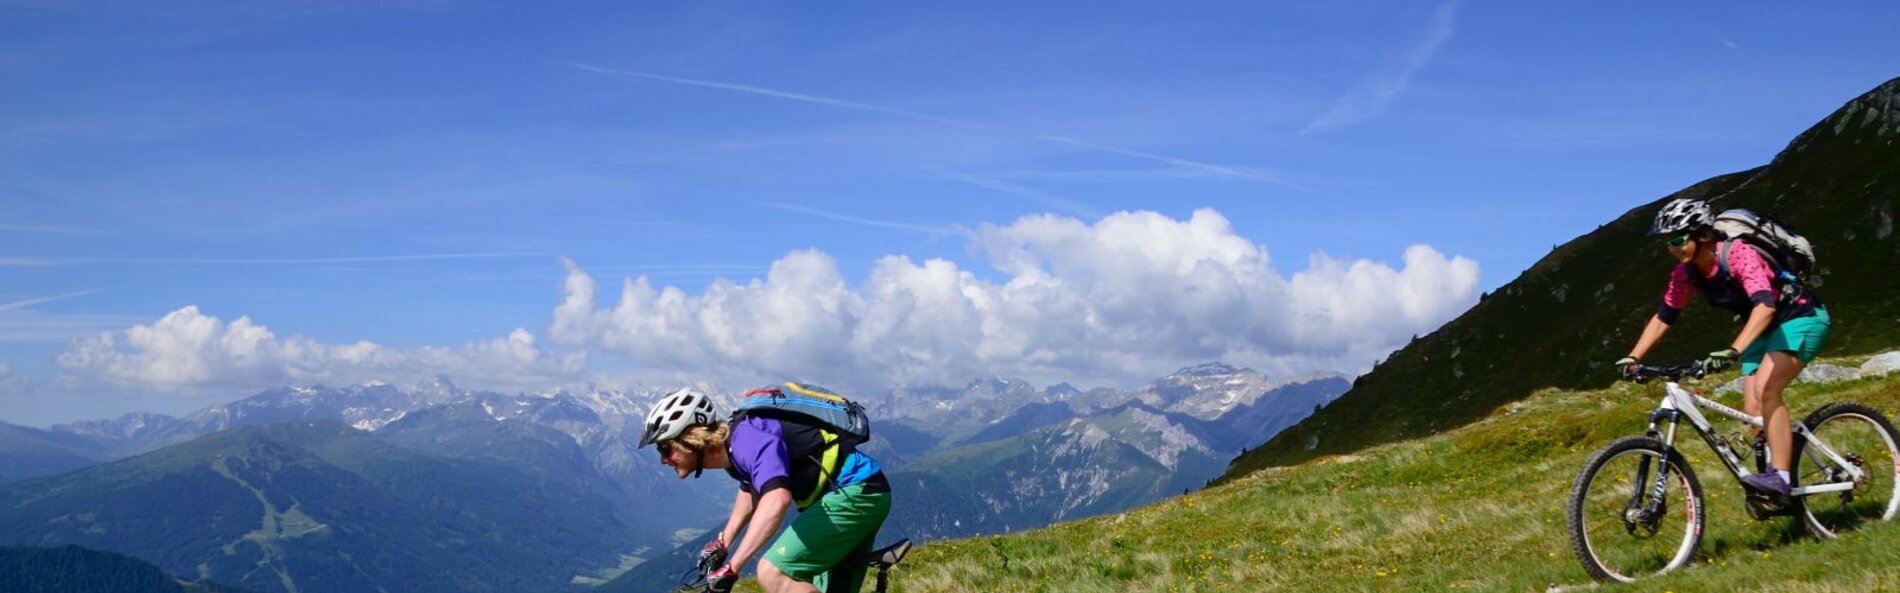 Zwei Mountainbiker auf einem Singletrail. Sie befahren den Trail abwärts, im Hintergrund blauer Himmel mit einigen Wolken am Horizont.